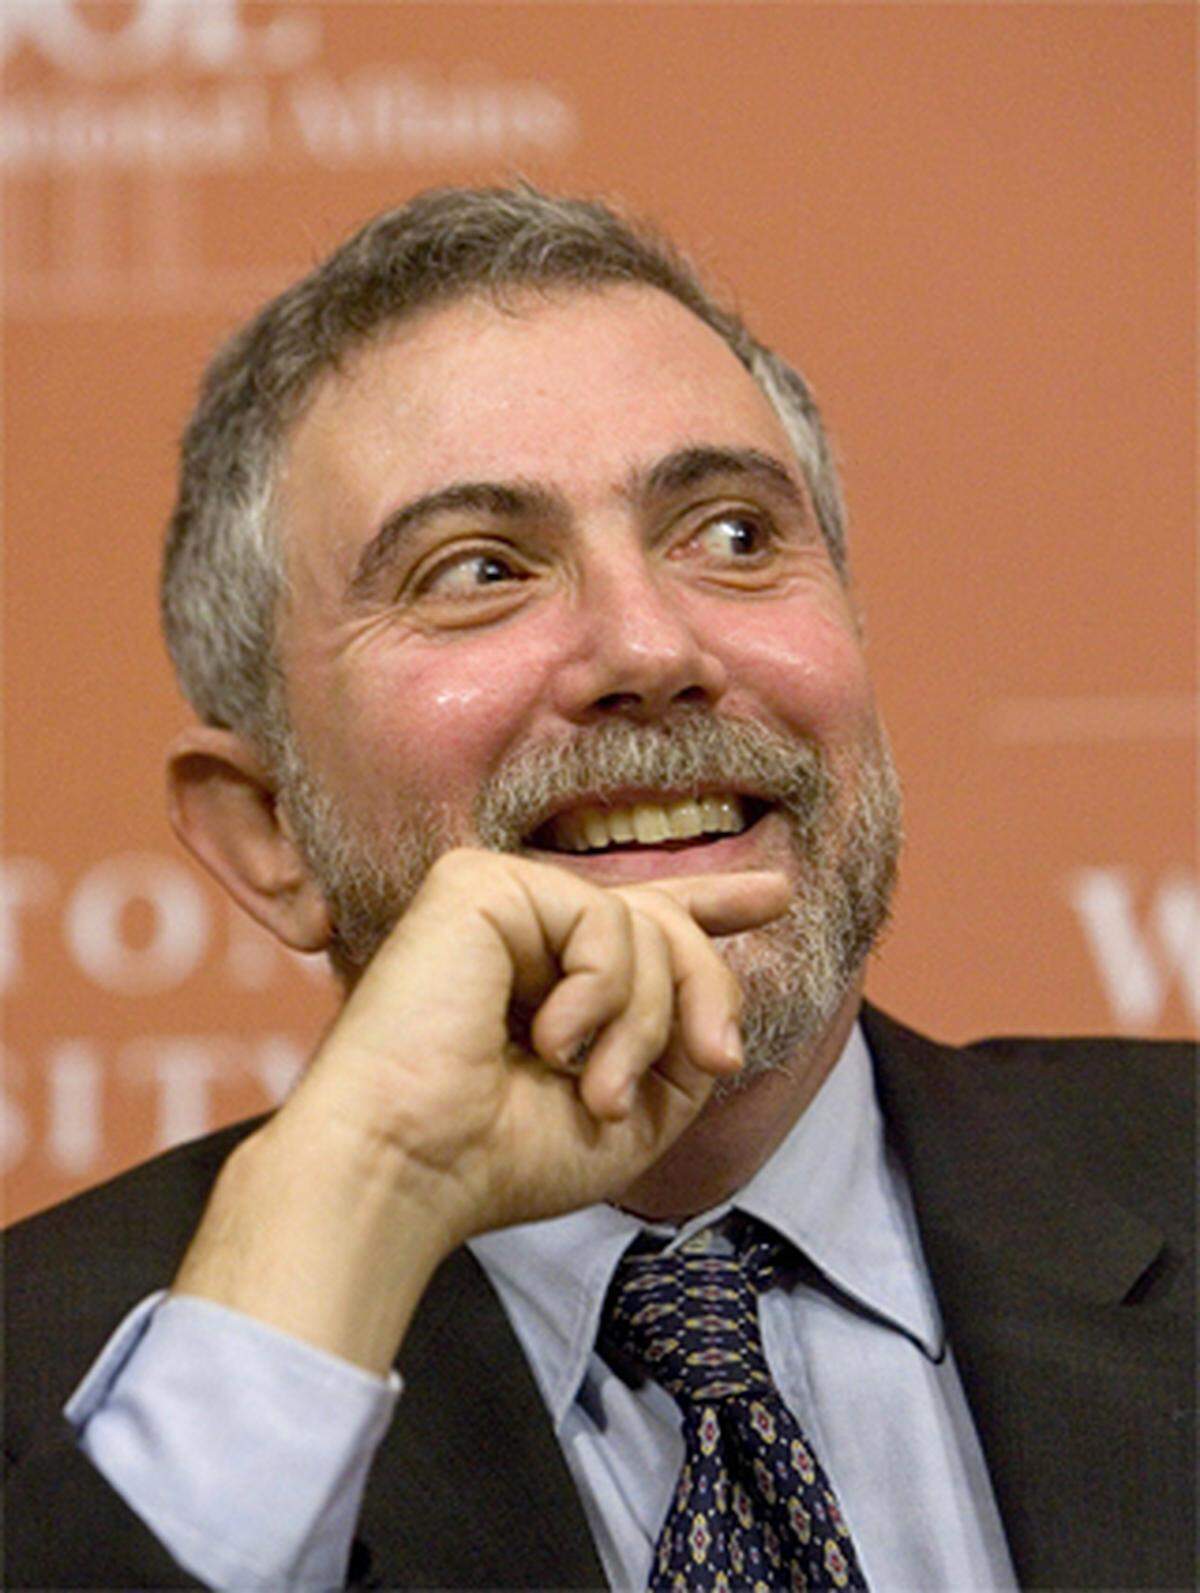 Der Enkel weißrussisch-jüdischer Einwanderer wunderte sich, wie Ökonomen und Politiker "so blind hatten sein können". Dabei hatte er schon früh den Konzernlenkern in den USA widersprochen.Als etwa JP-Morgan-Chase-Vorstandschef Jamie Dimon im Frühjahr 2008 meinte, die Finanzkrise sei zu 75 bis 80 Prozent bewältigt, meinte Krugman: "Ich bin mir da längst nicht so sicher.Das war das moderne Gegenstück der 30er-Jahre-Depression". Es bleibe eine "unheimliche Geschichte".